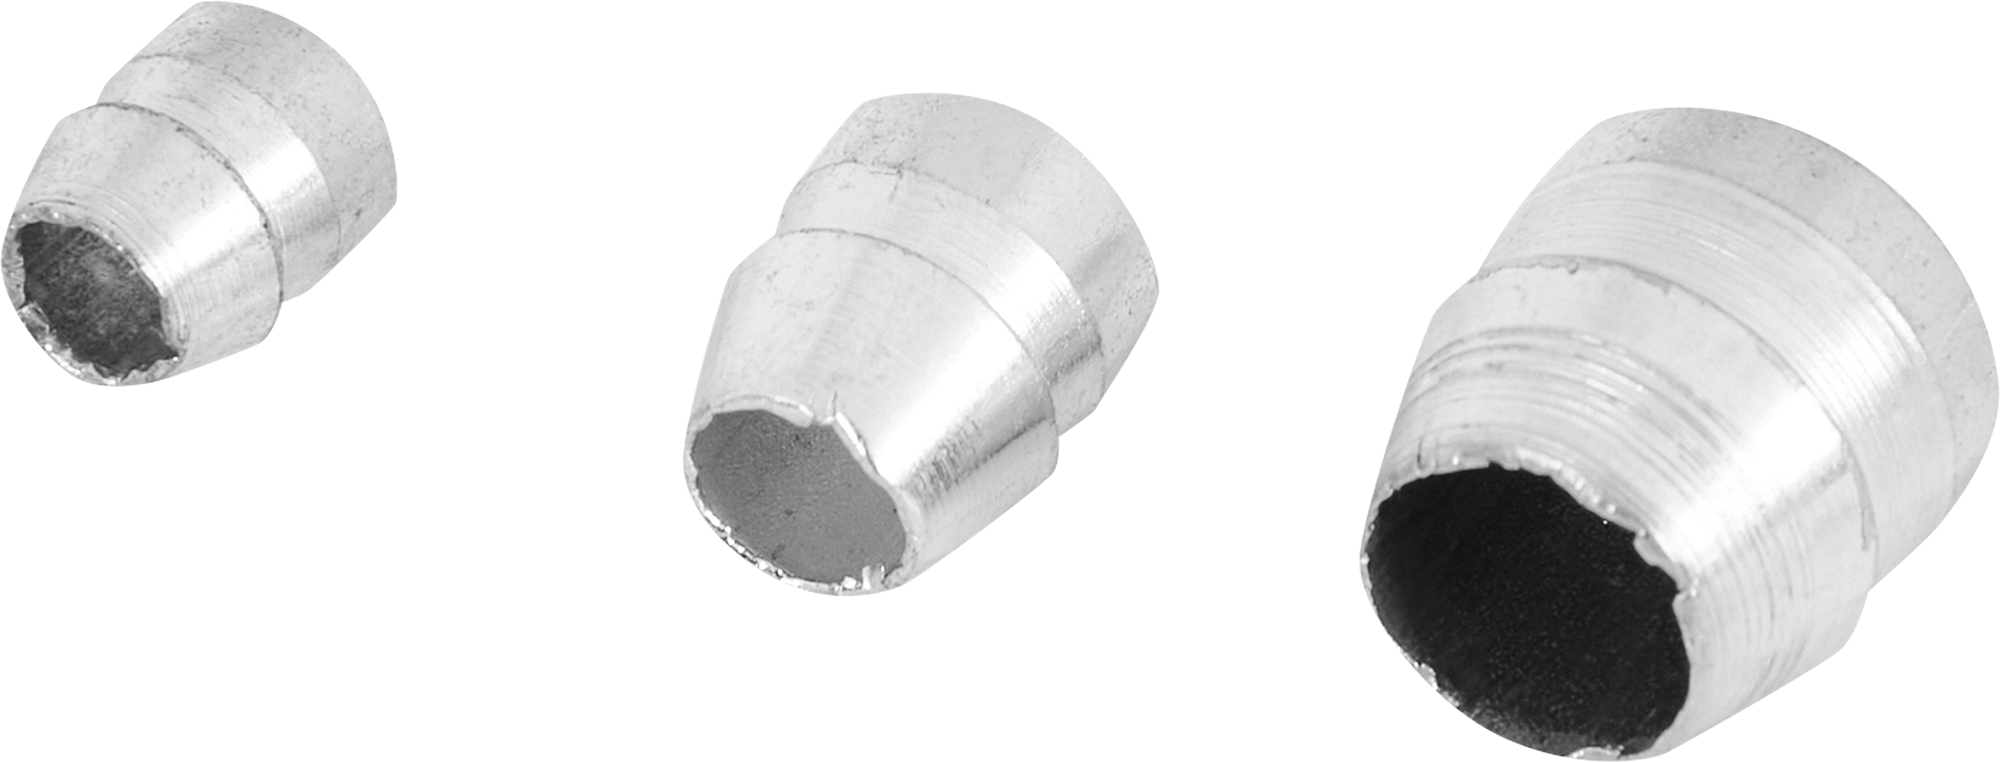 Набор клиньев для молотка и топора колцевые Спец 3742-F 10х8/12х10/14х13 мм, 3 шт.